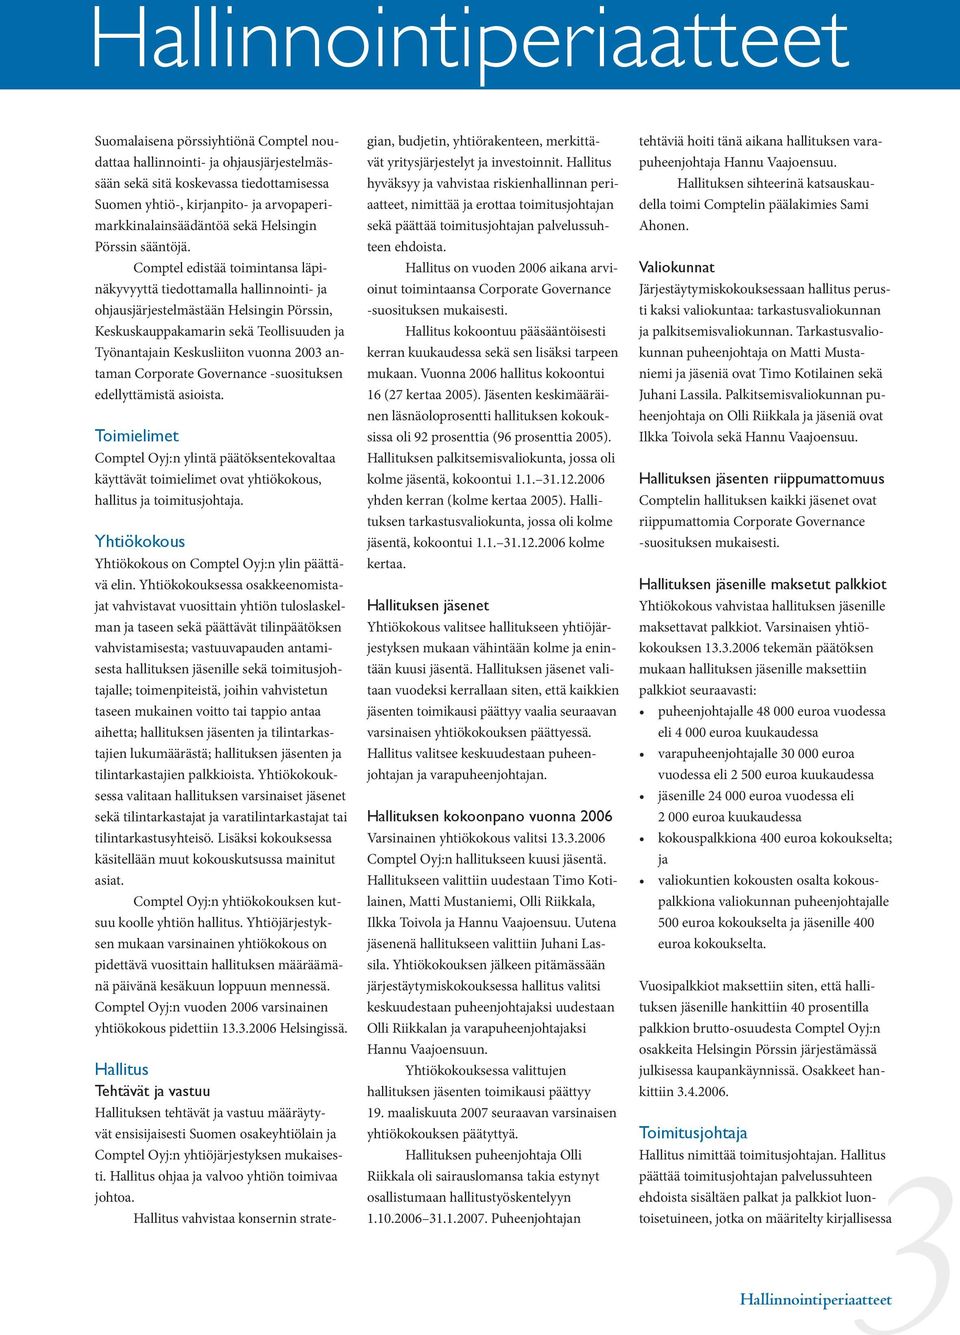 Comptel edistää toimintansa läpinäkyvyyttä tiedottamalla hallinnointi- ja ohjausjärjestelmästään Helsingin Pörssin, Keskuskauppakamarin sekä Teollisuuden ja Työnantajain Keskusliiton vuonna 2003